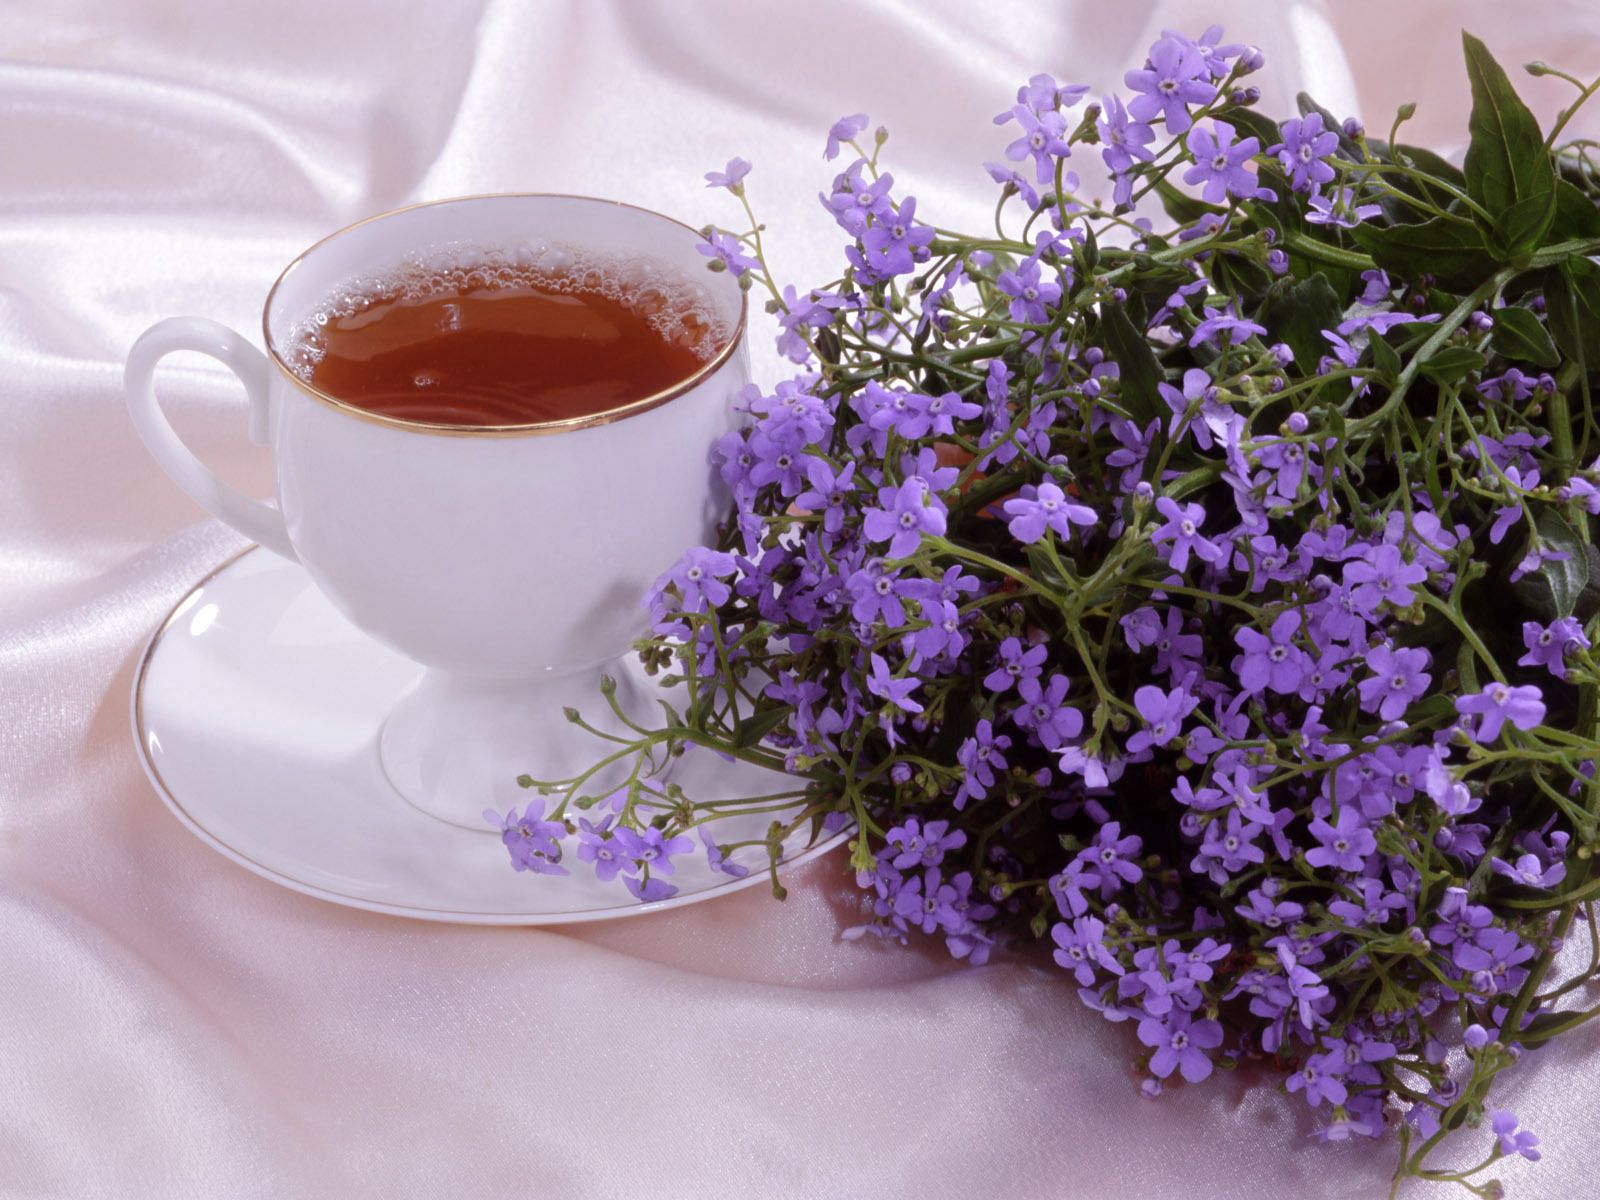 romance, flowers, food, cup, tea